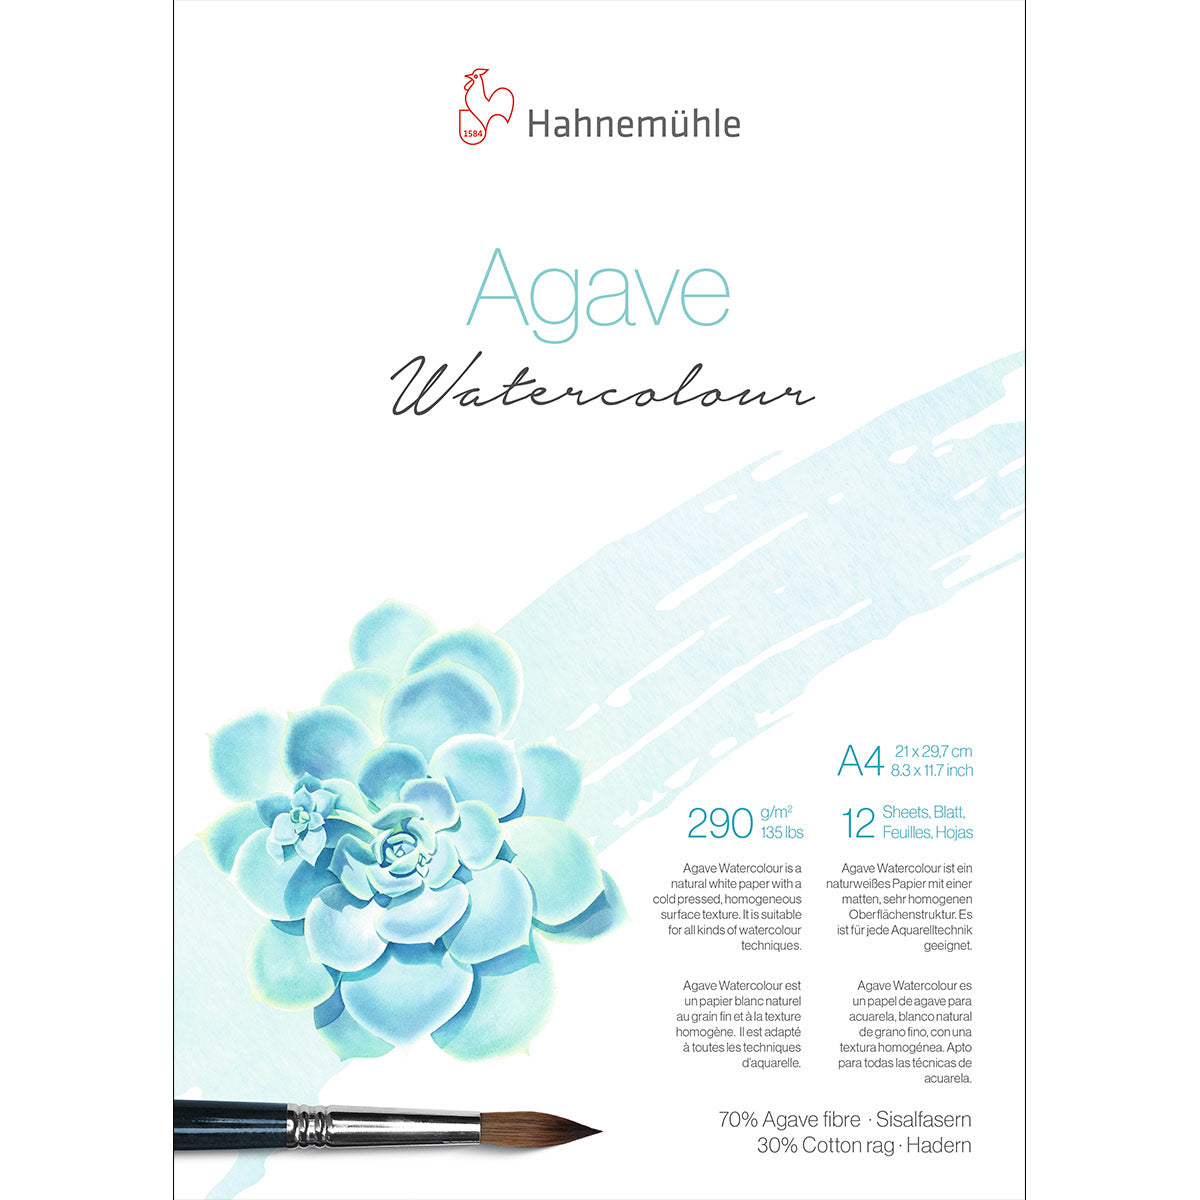 Hahnemuhle-Bloc d'aquarelle agave pressé à froid 290gsm A4